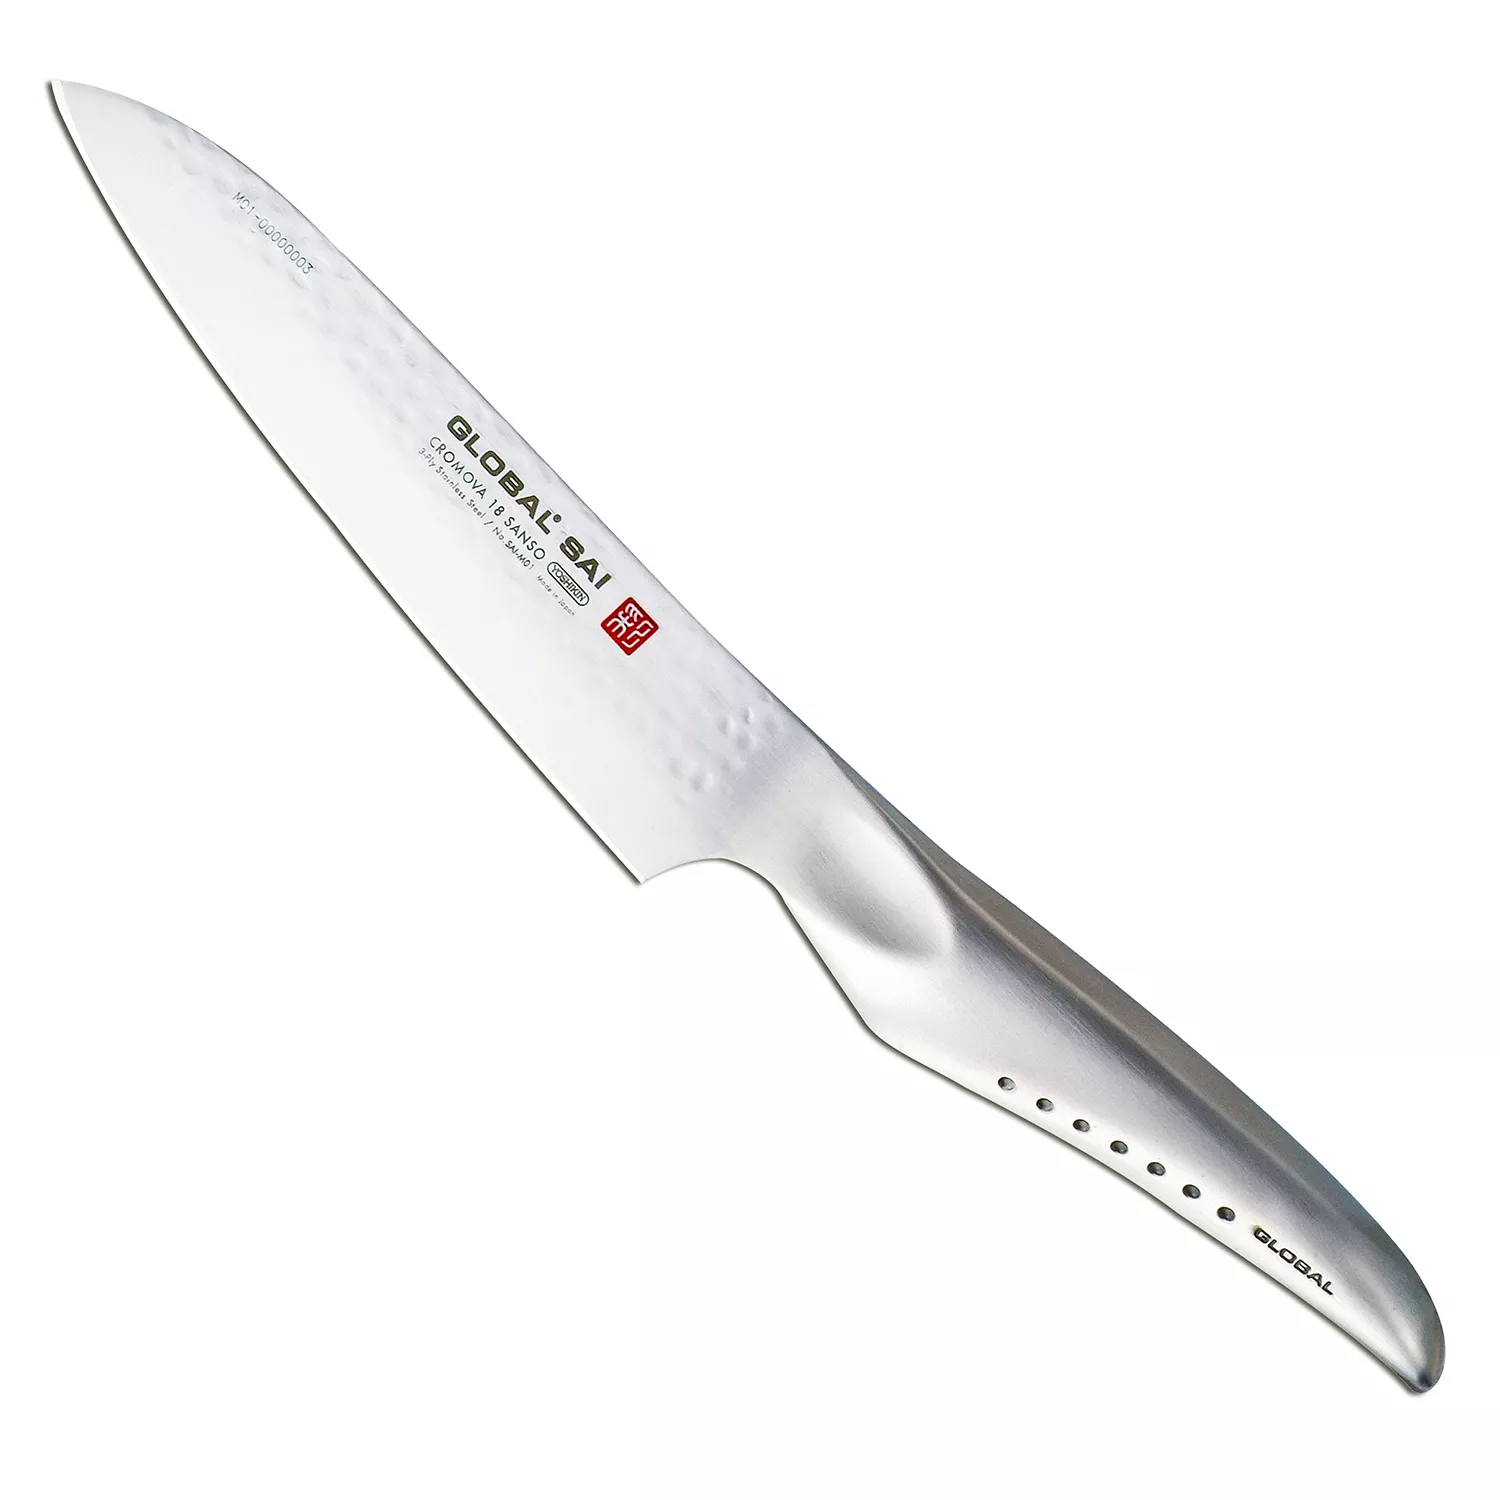 Global Sai Chef&#8217;s Knife